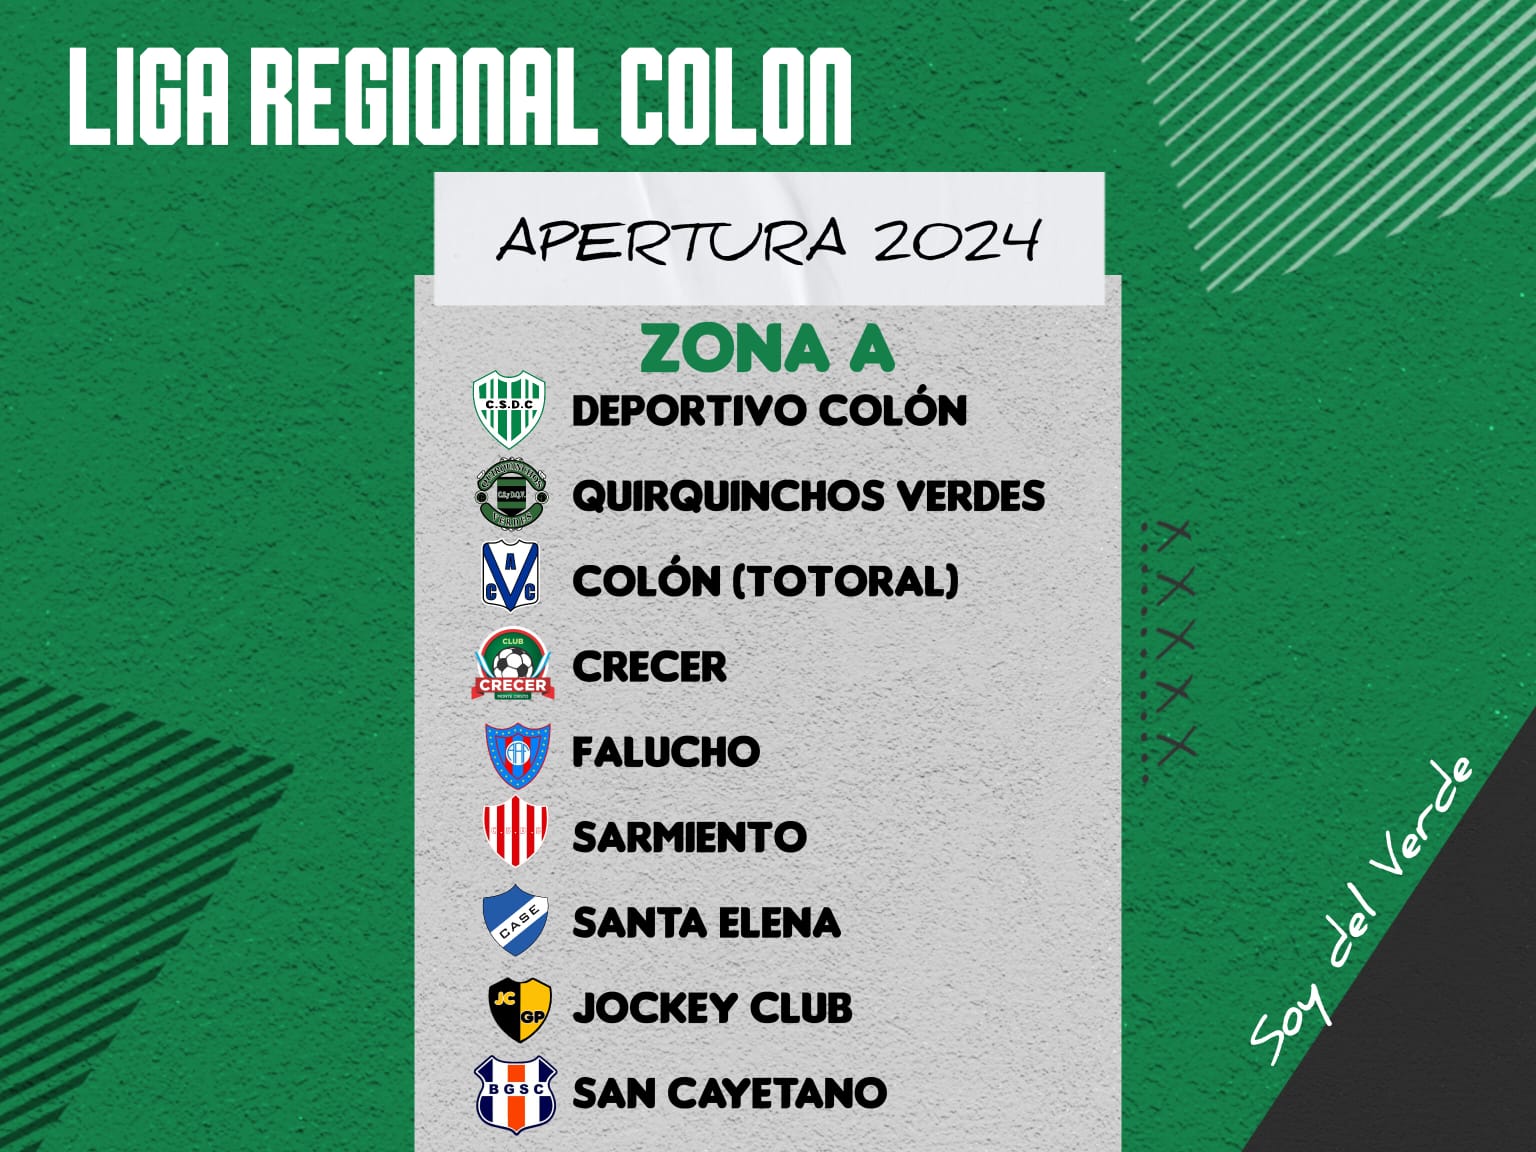 Comienza la Temporada 2024 de la Liga Regional Colón